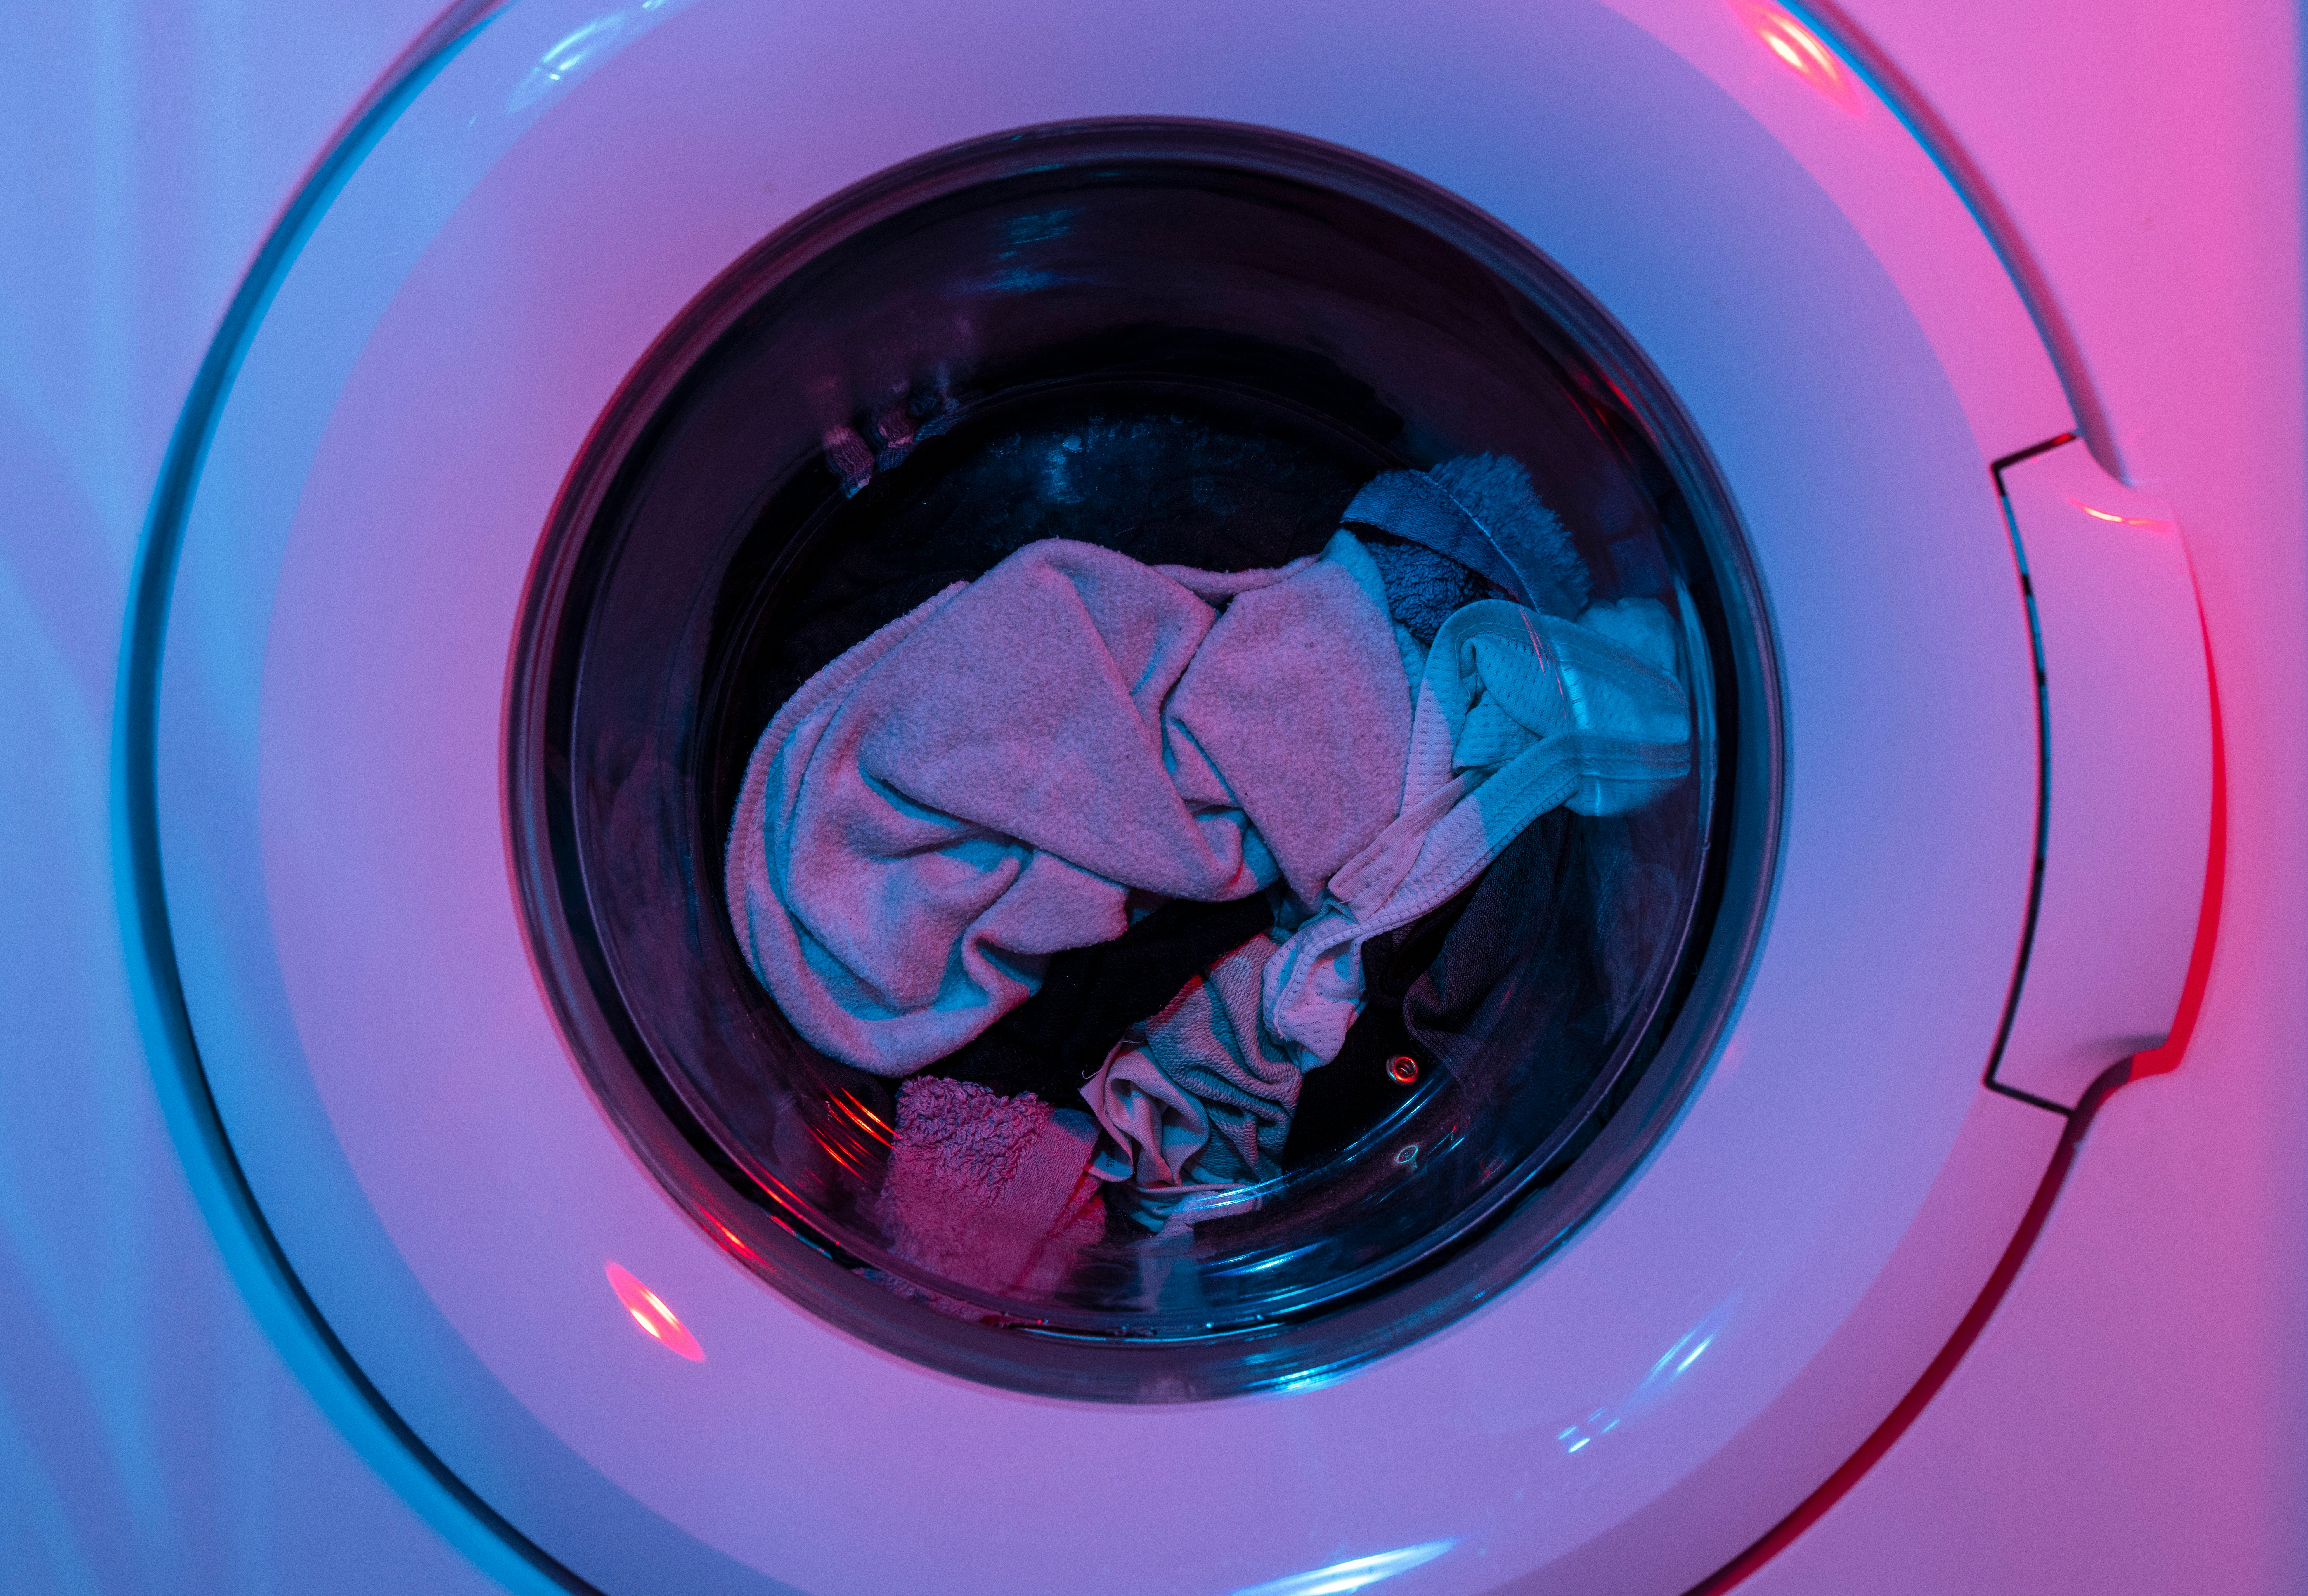 Best liquid detergent for washing machines
